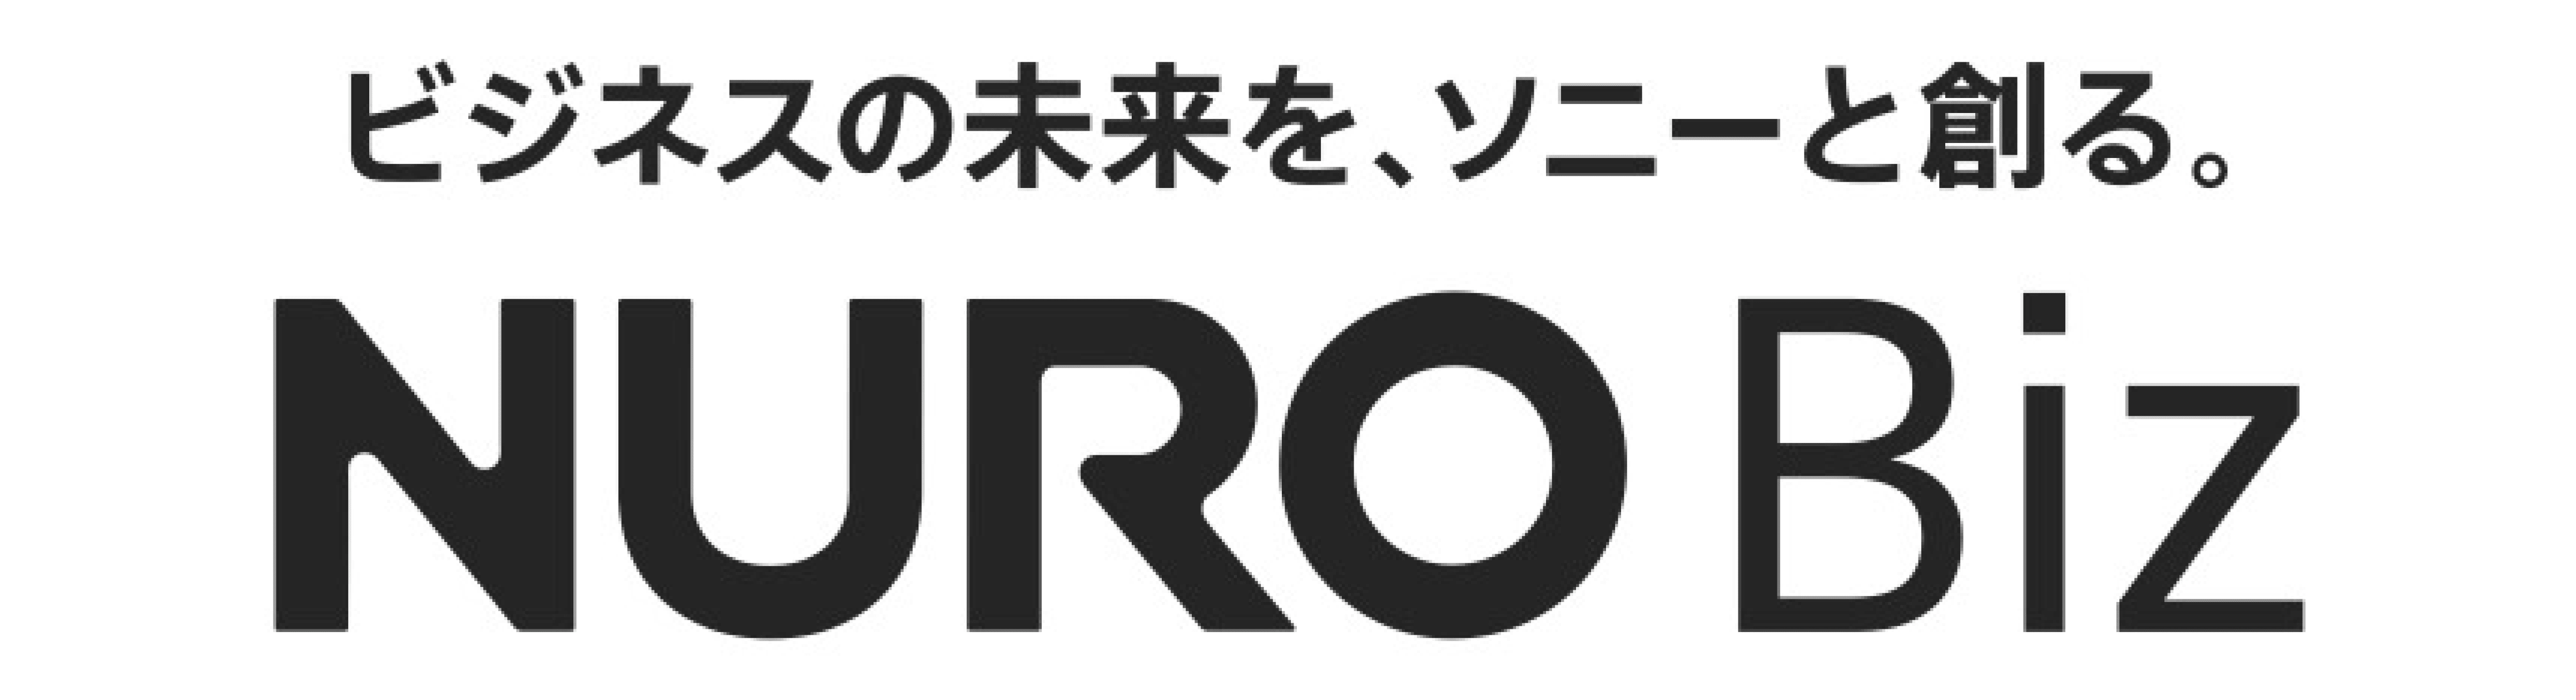 nuro biz logo big size